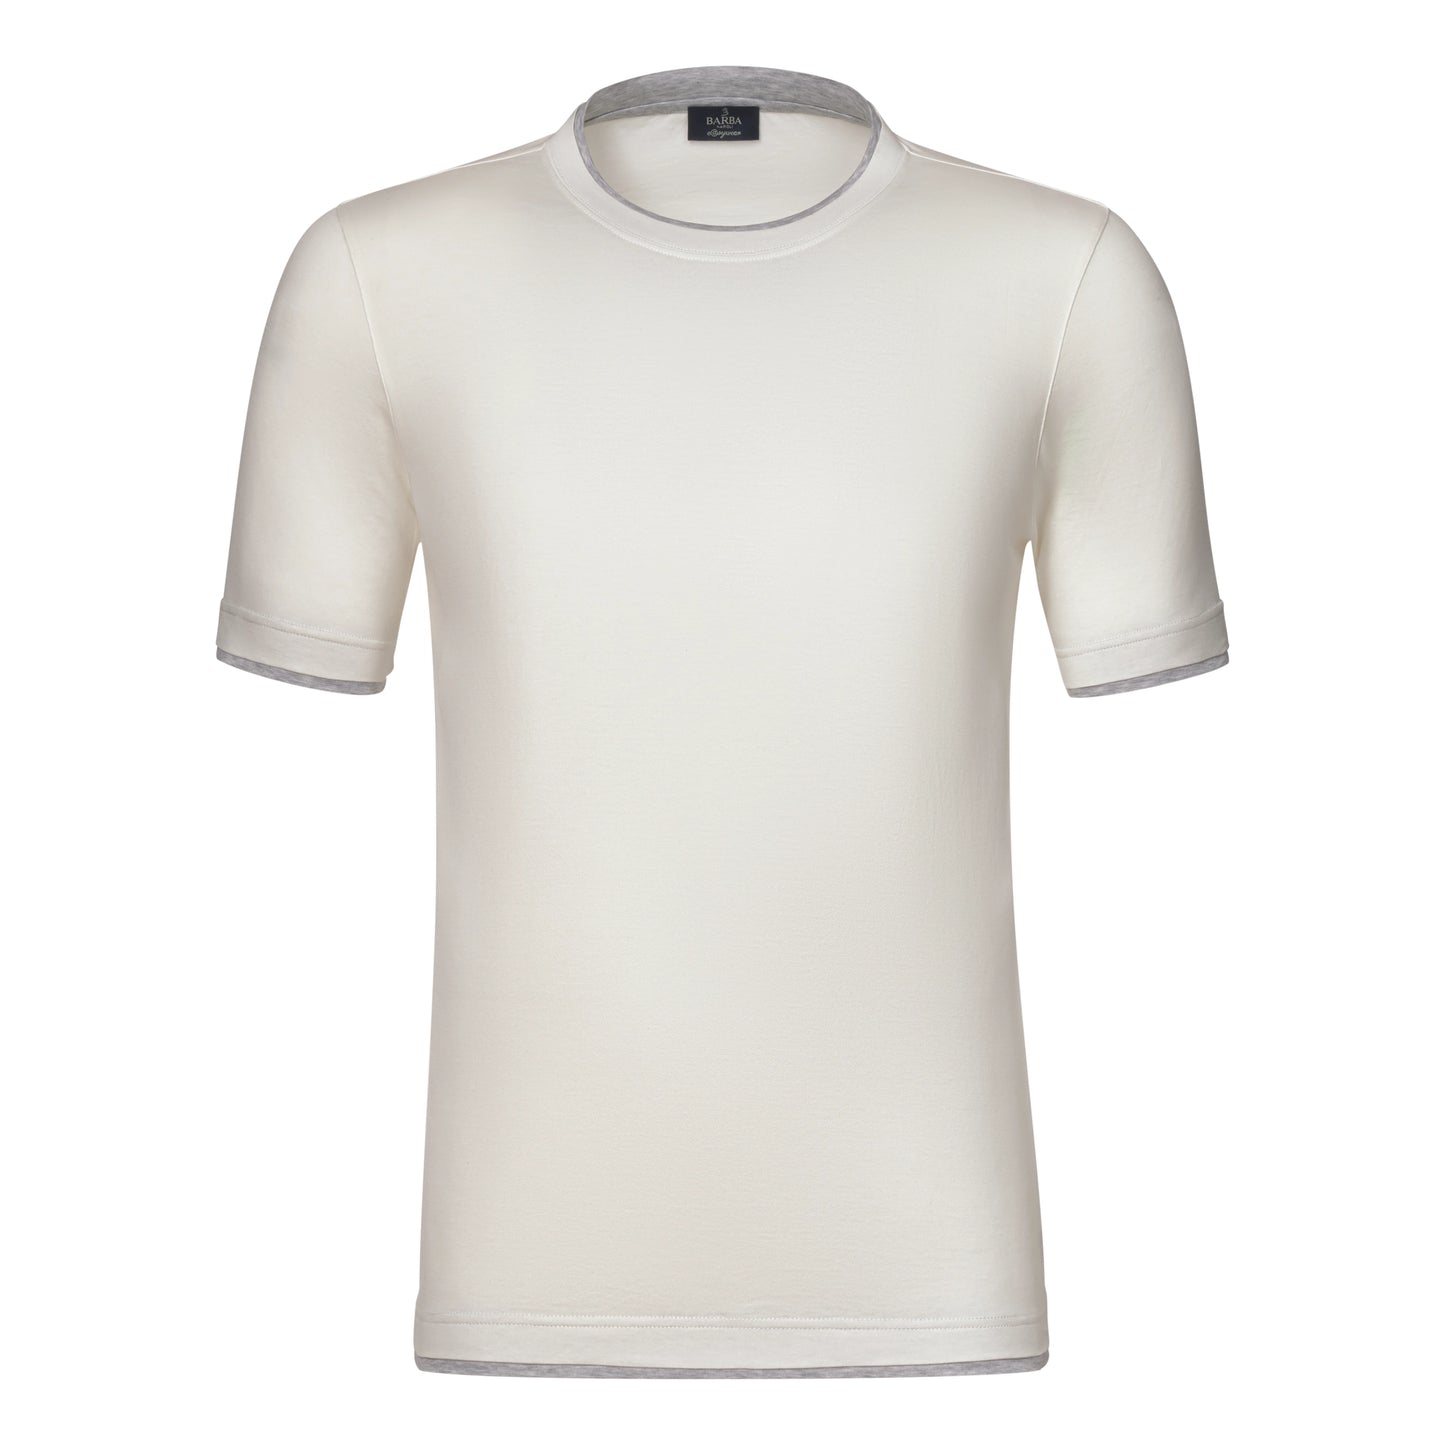 Cotton Crew-Neck T-Shirt in Warm White